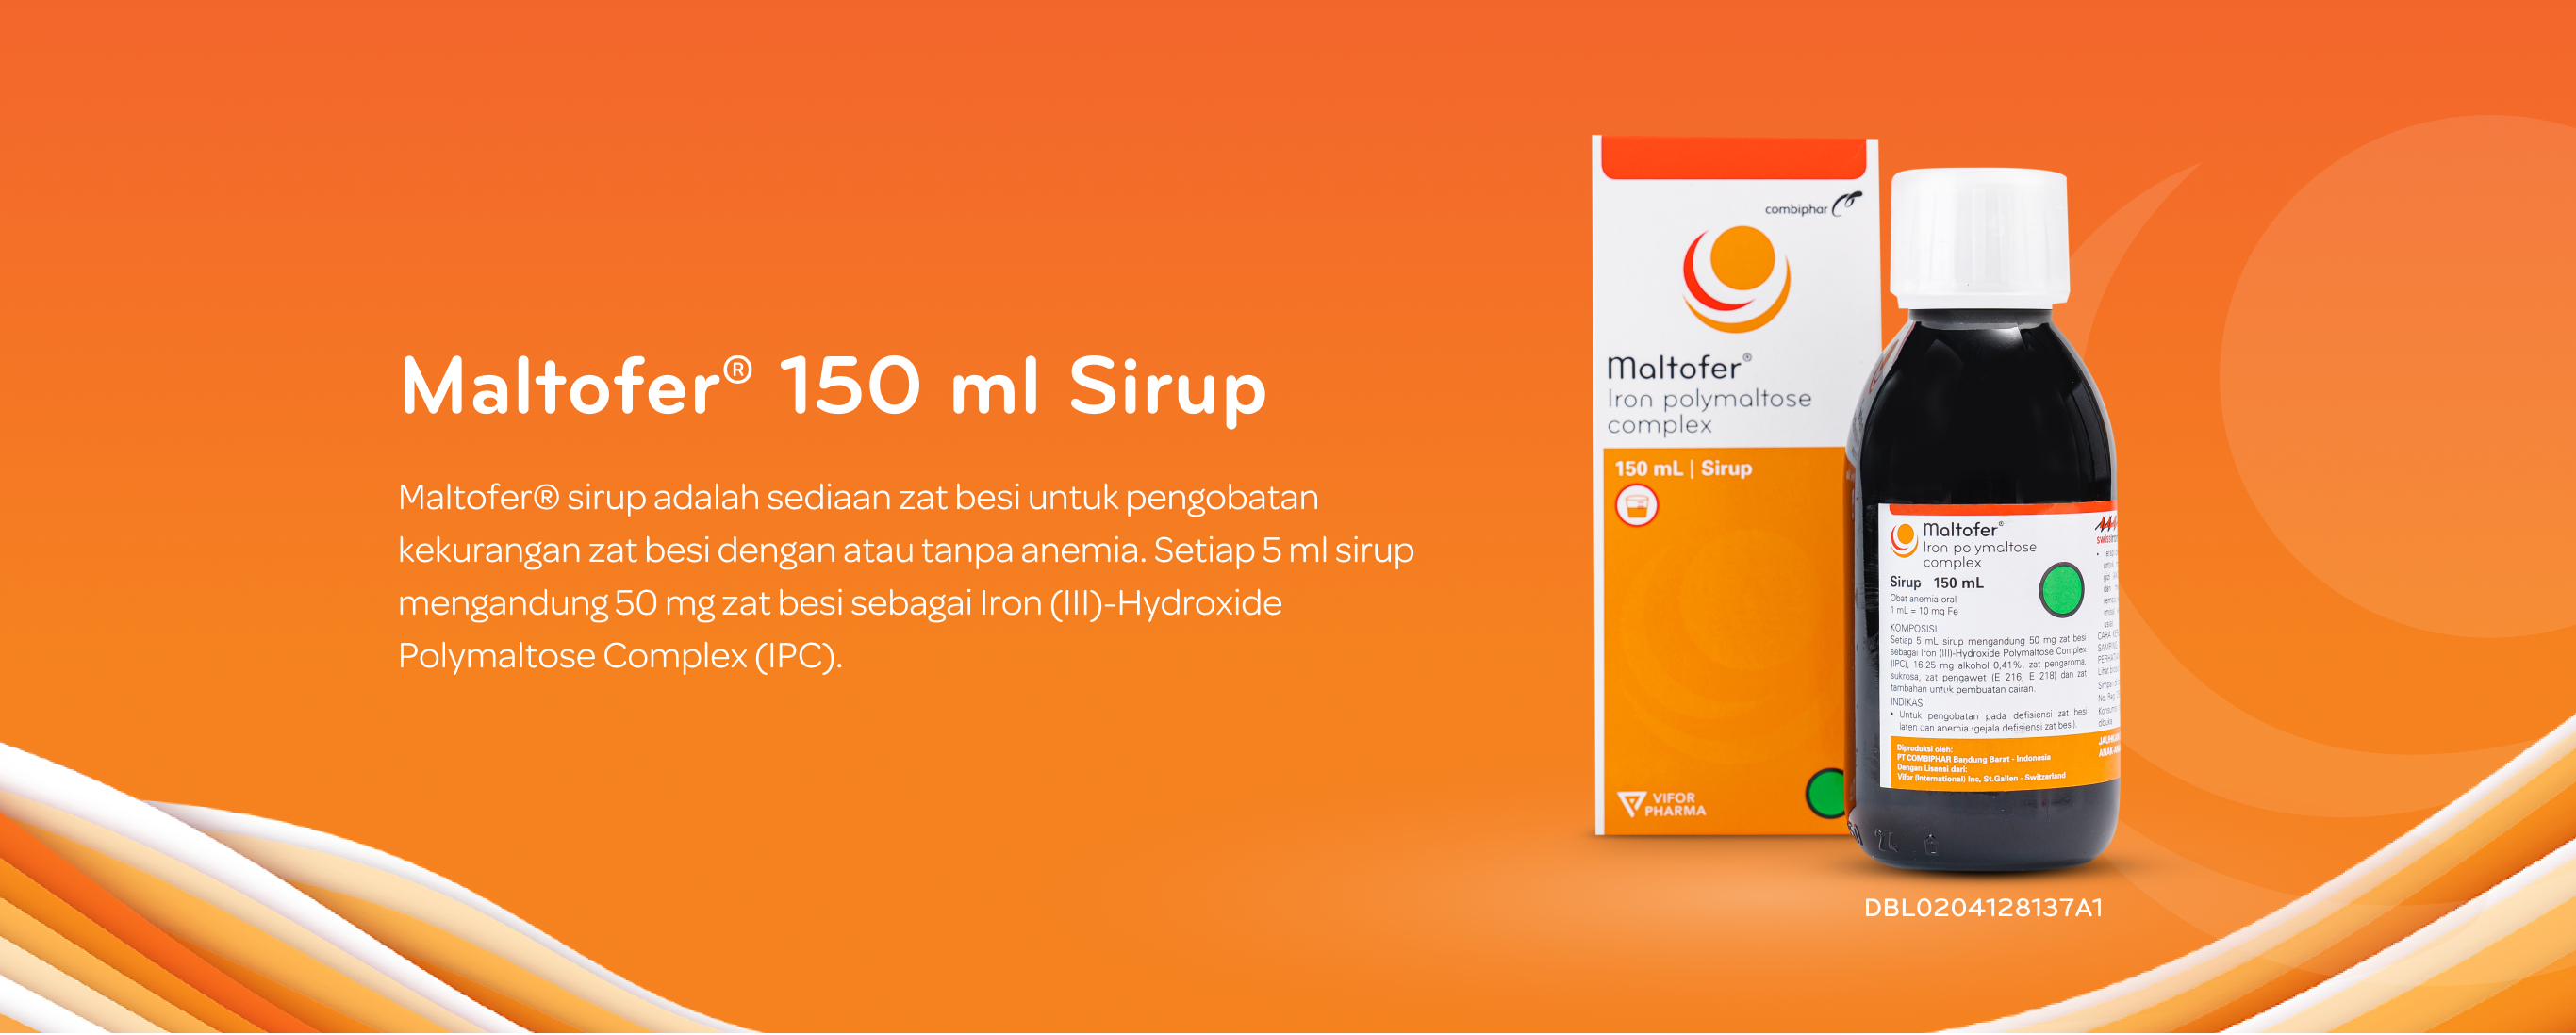 Maltofer® 150 ml Sirup